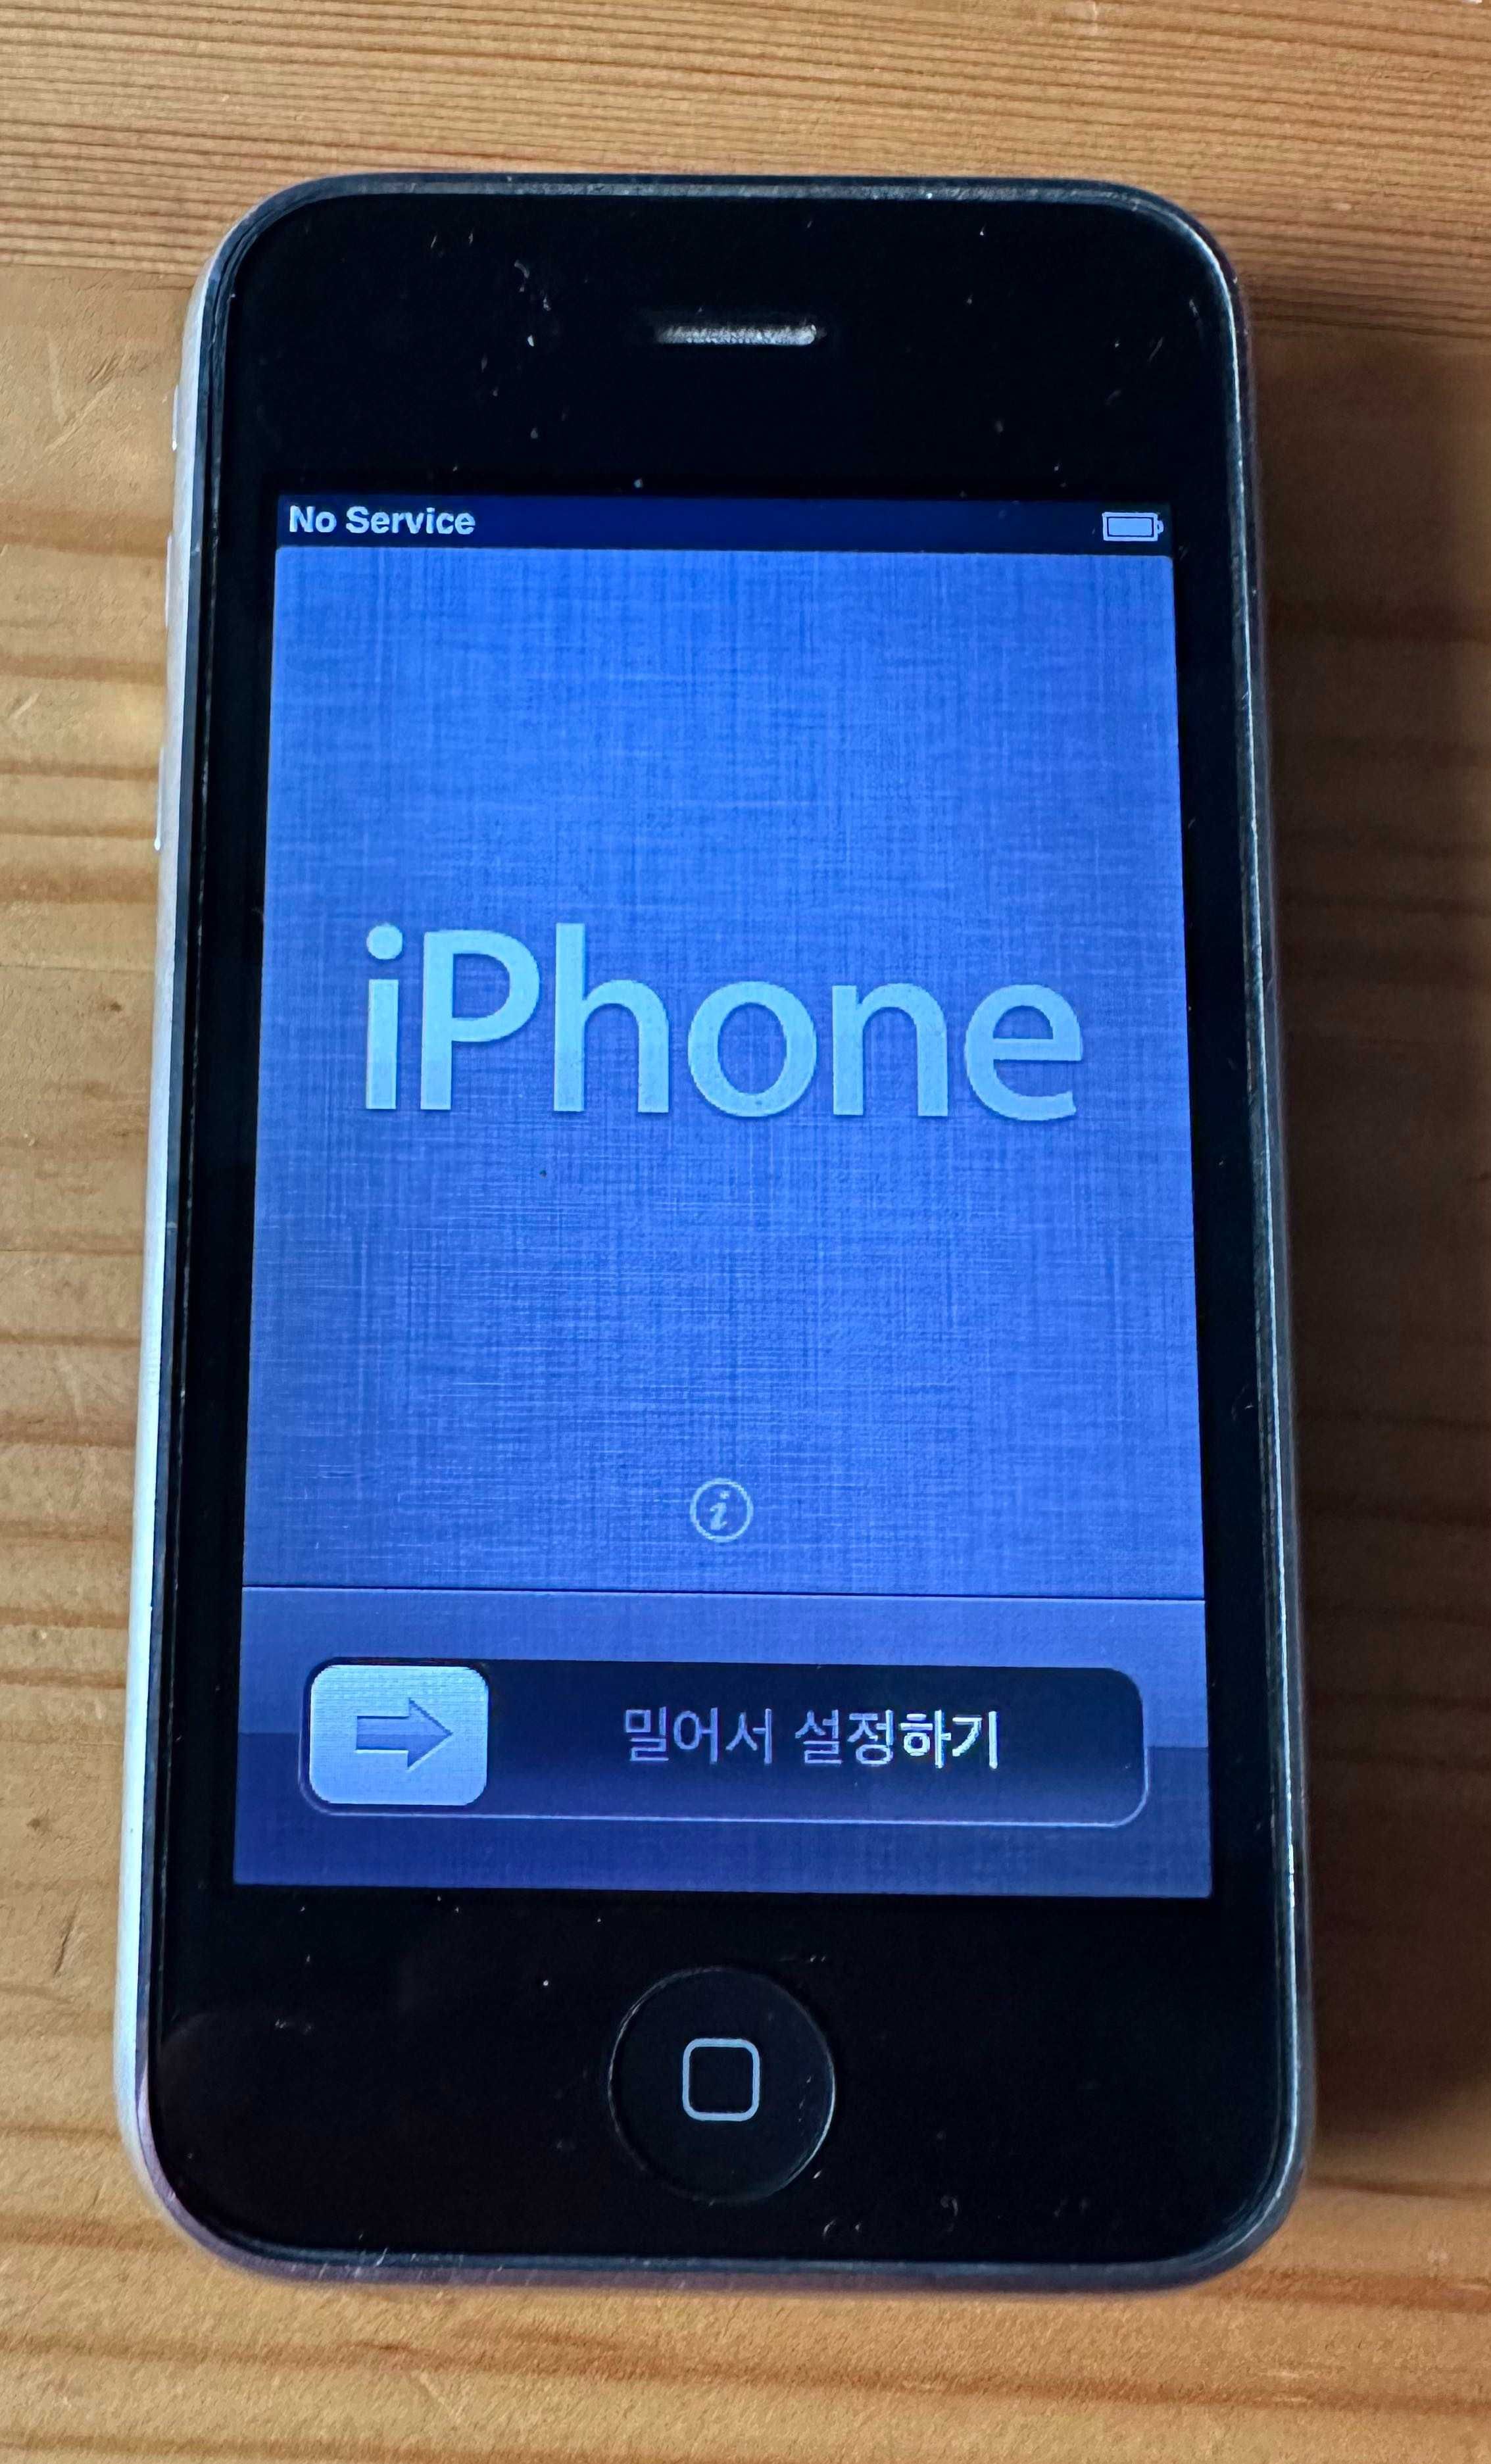 IPhone 3GS 16/32 Gb, iPhone 4S 16Gb